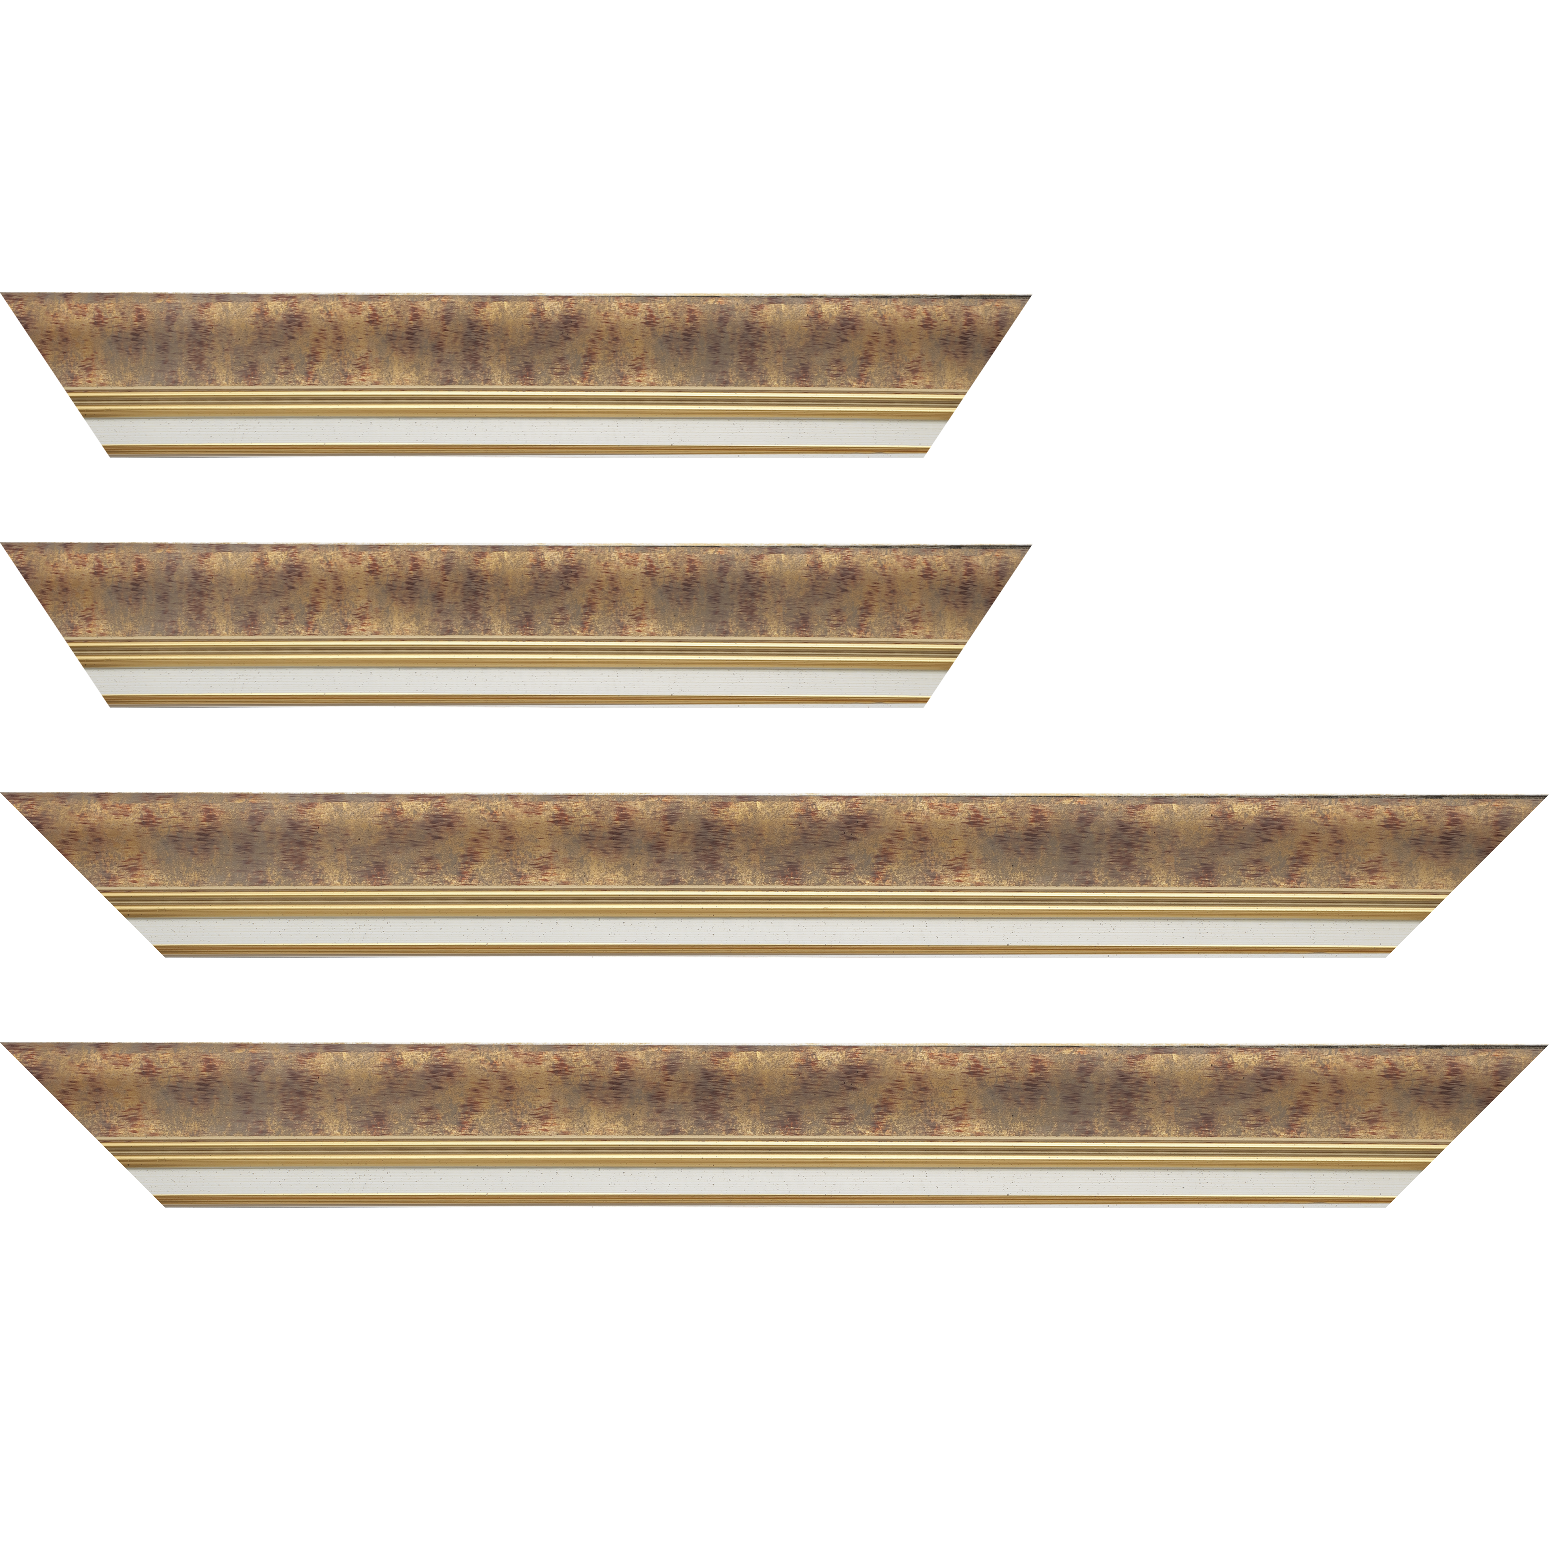 Baguette bois profil incurvé largeur 5.7cm de couleur bordeaux patiné fond or marie louise blanche mouchetée filet or intégré - 28x34